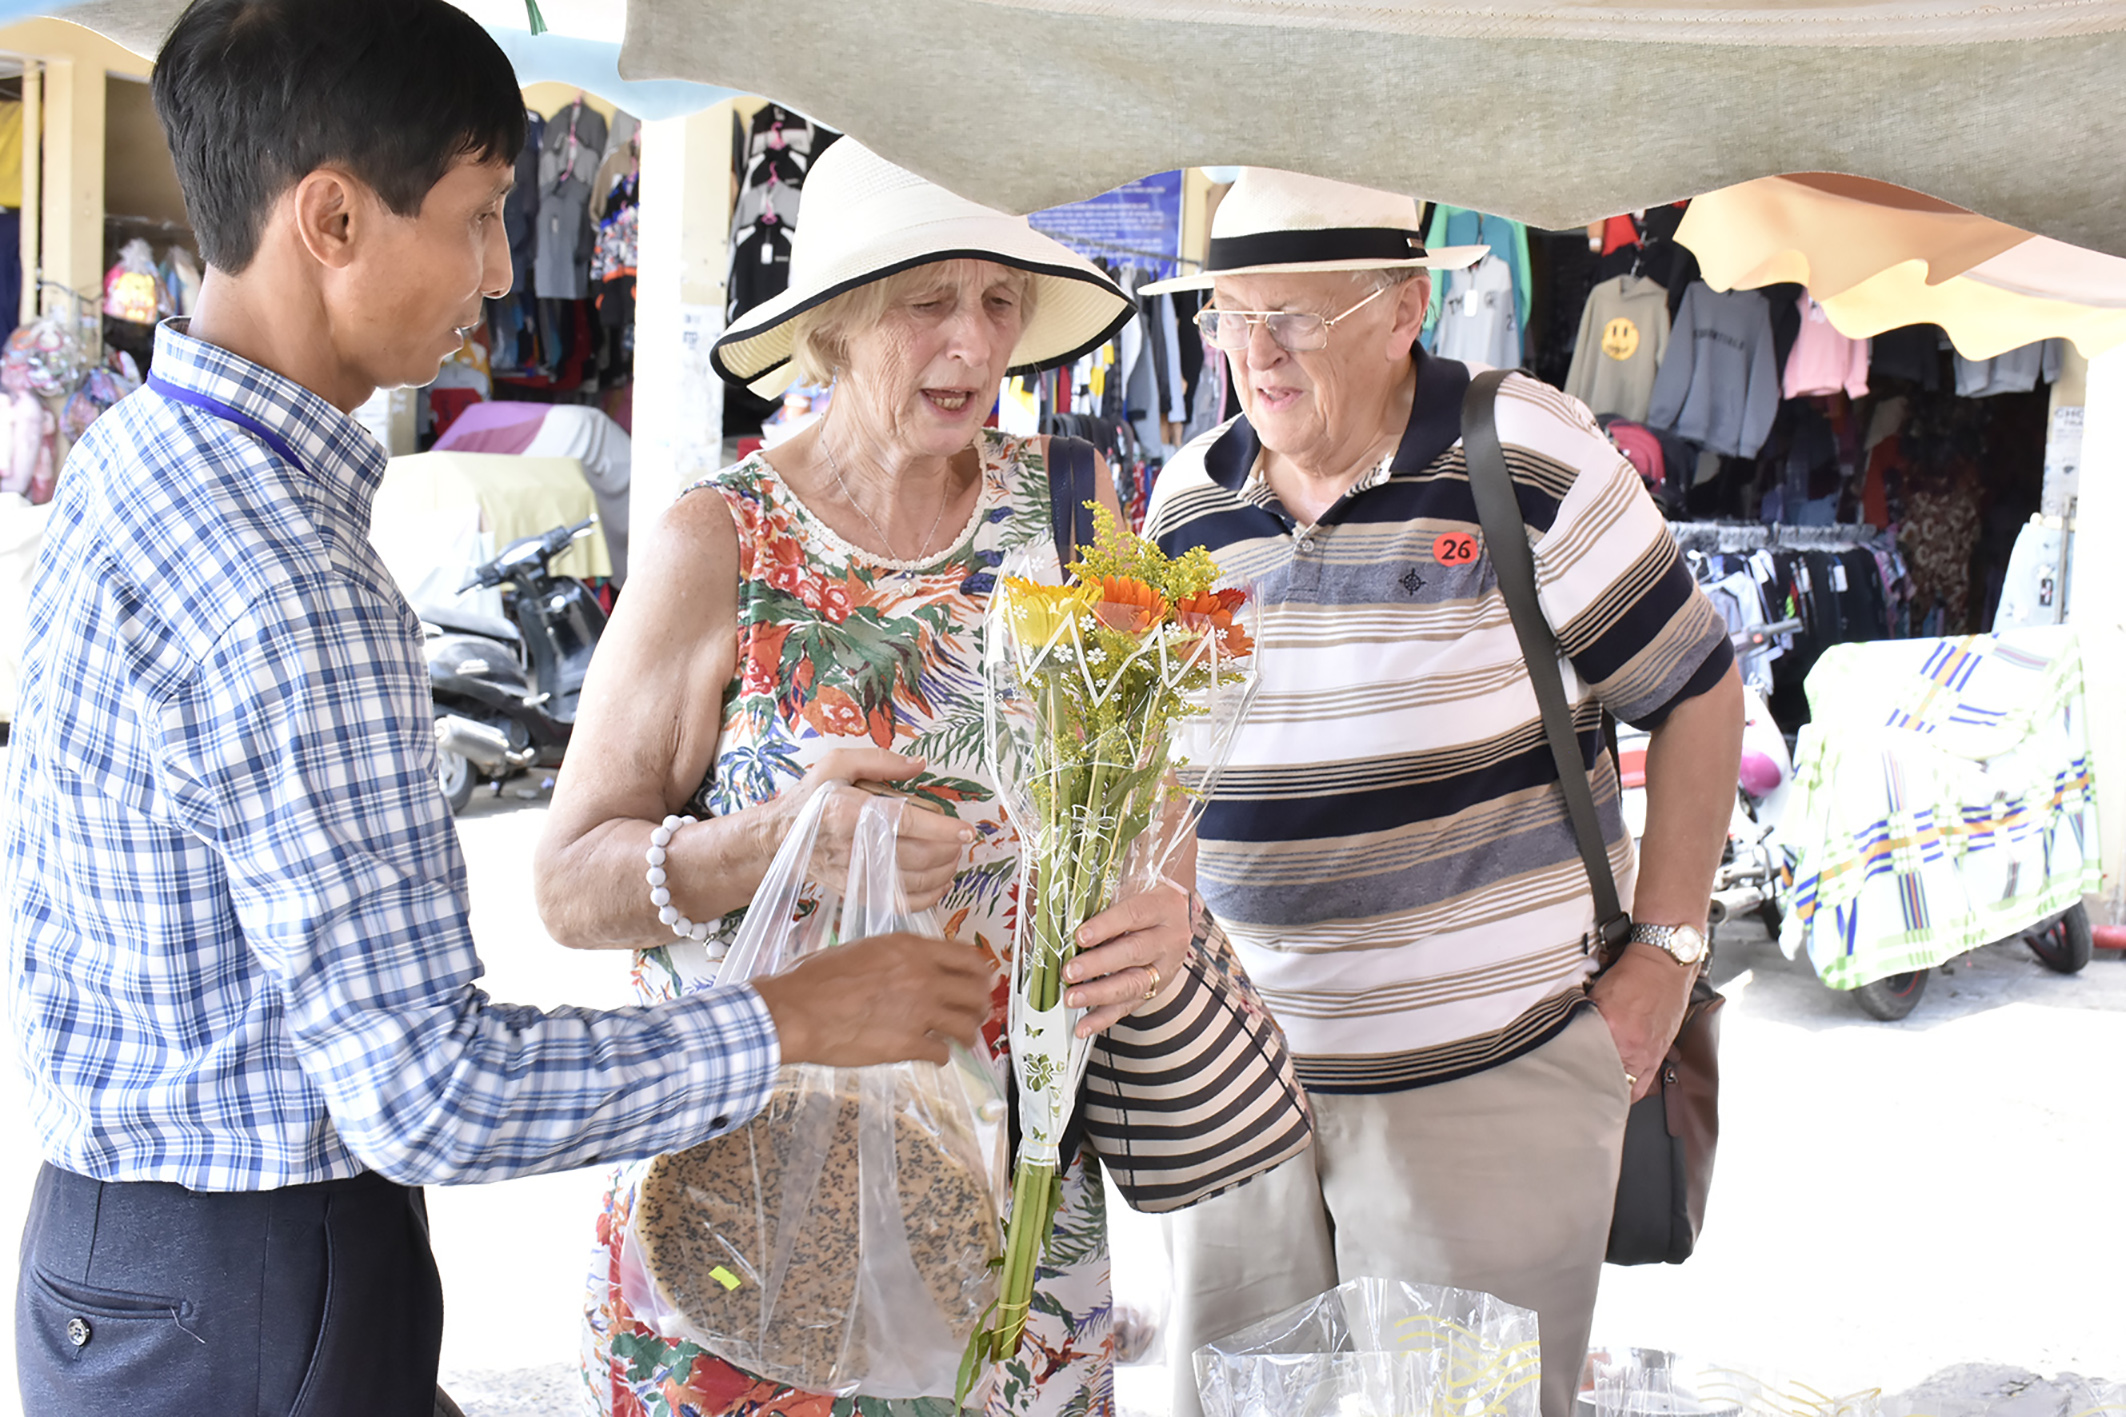 Sau một vòng dạo chợ Hòa Long, 2 du khách Anh mua bánh tráng, hoa tại chợ.